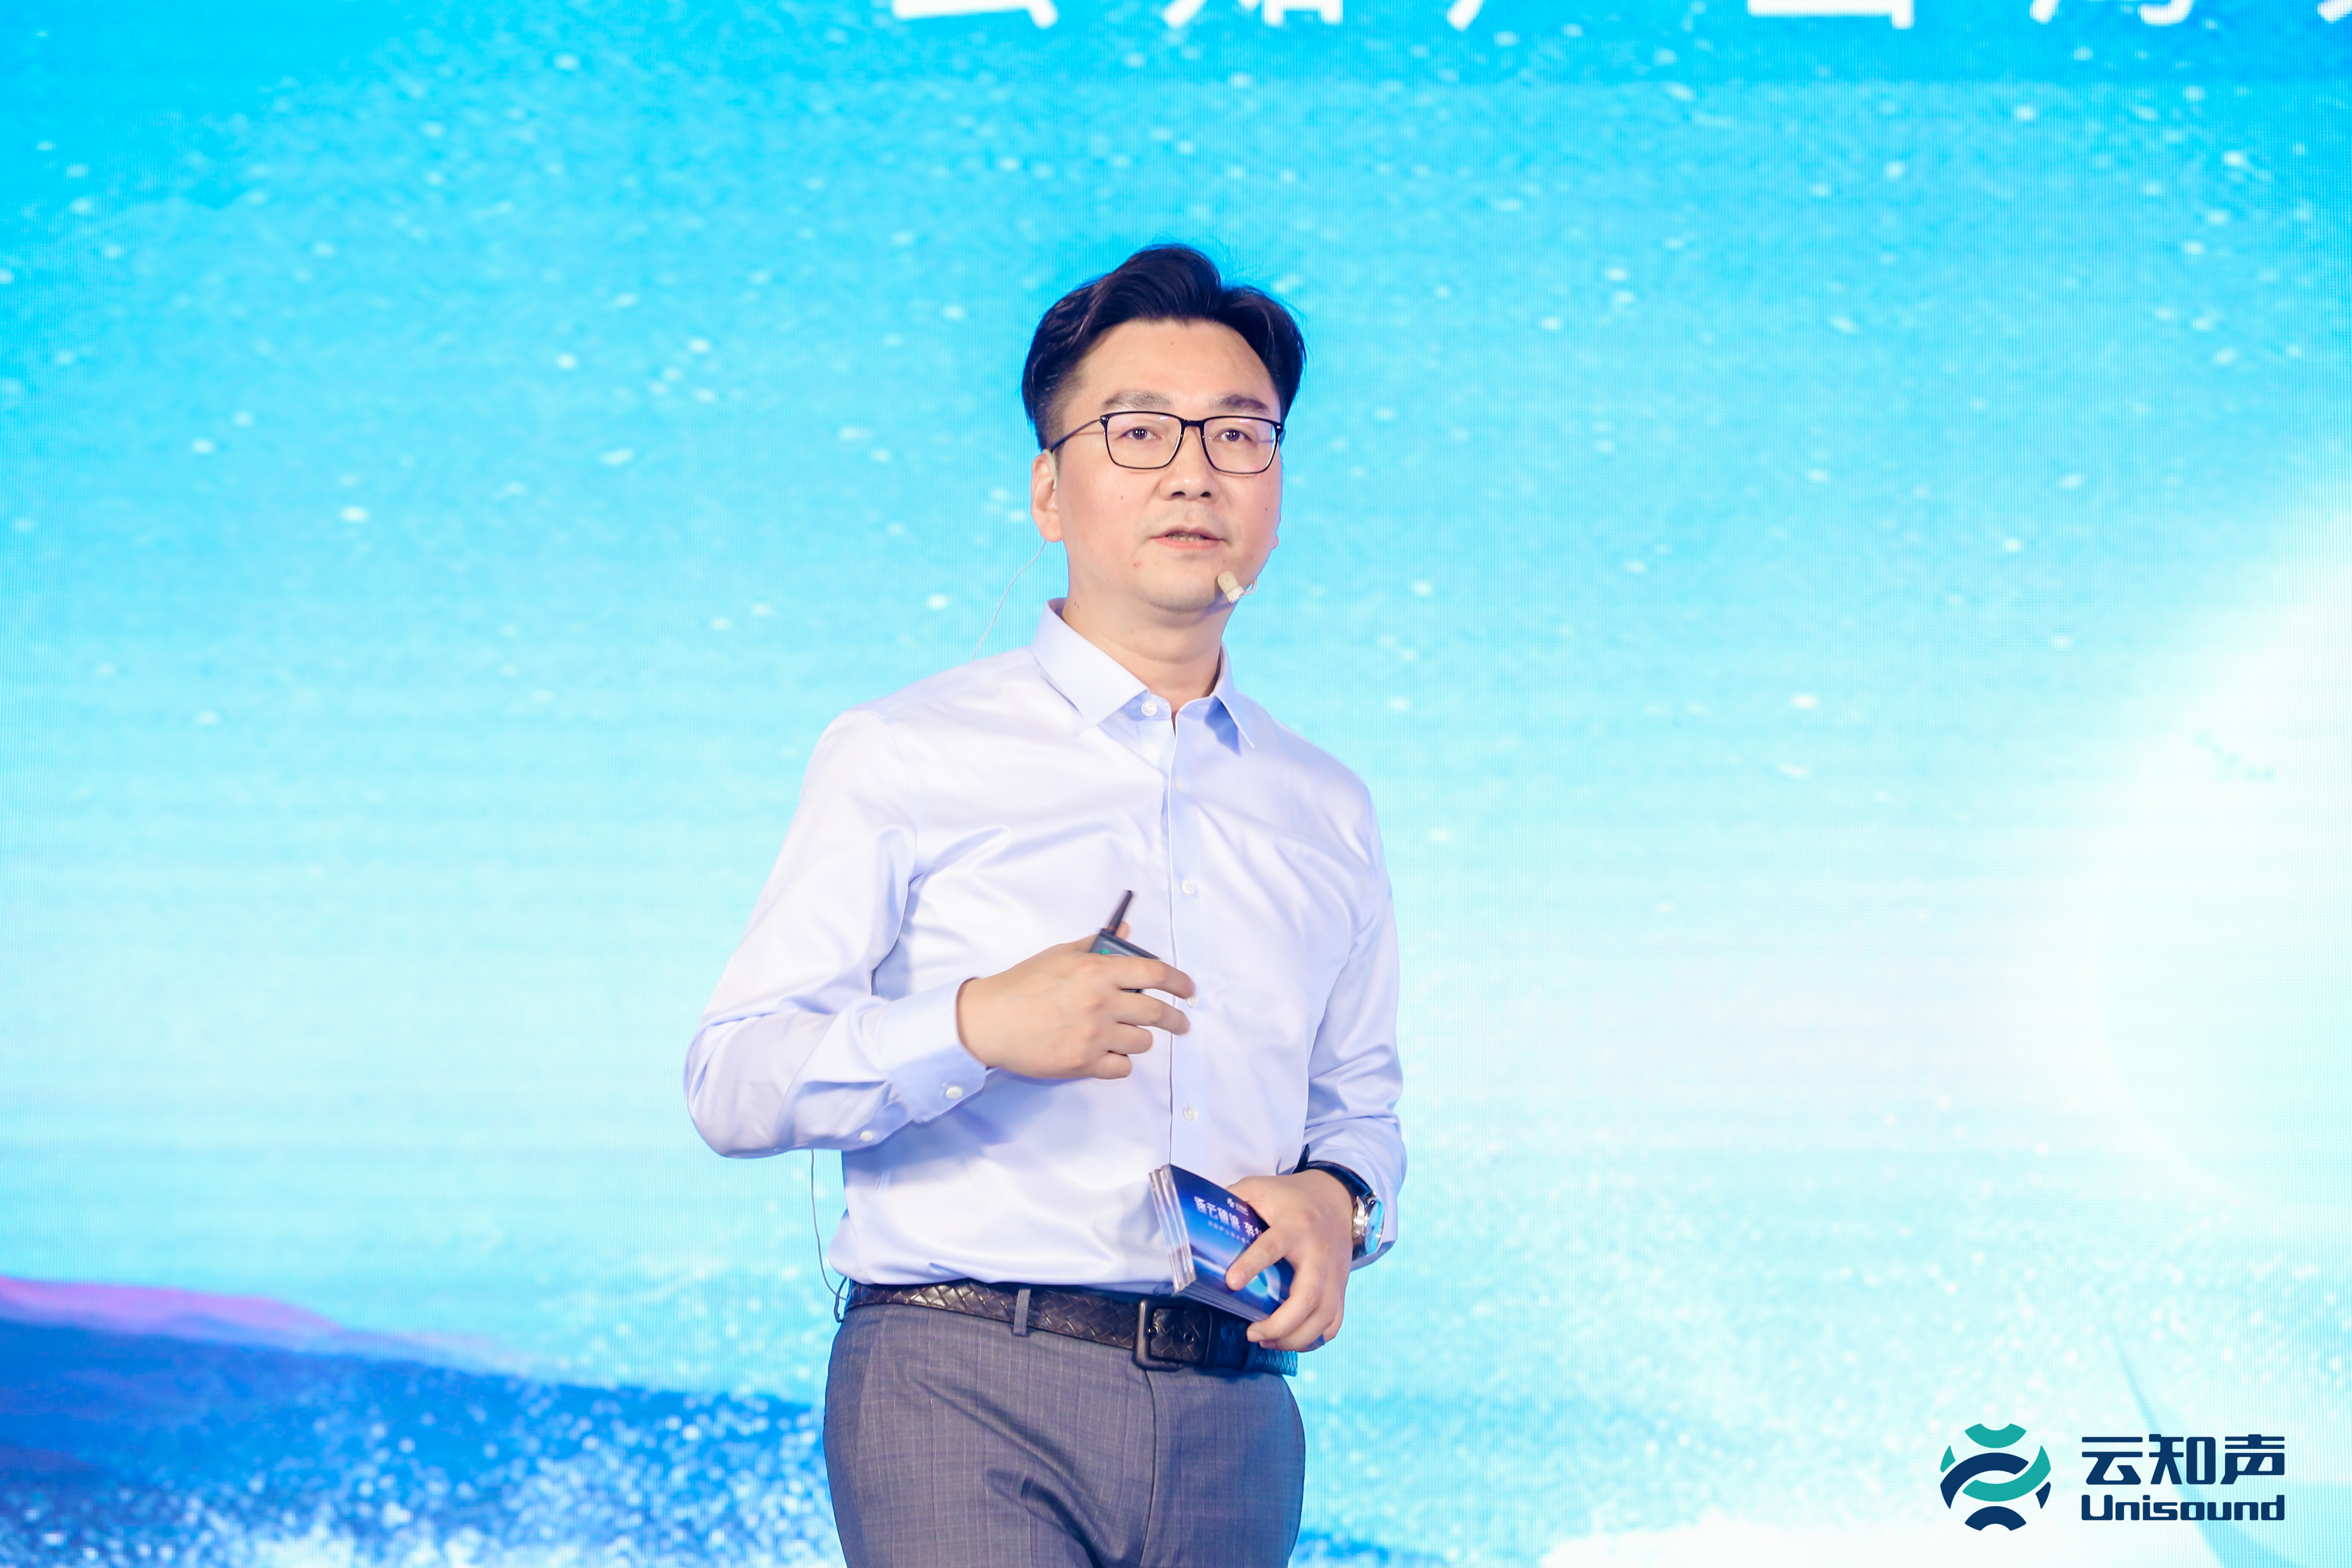 云知声创始人、CEO黄伟发表演讲.JPG